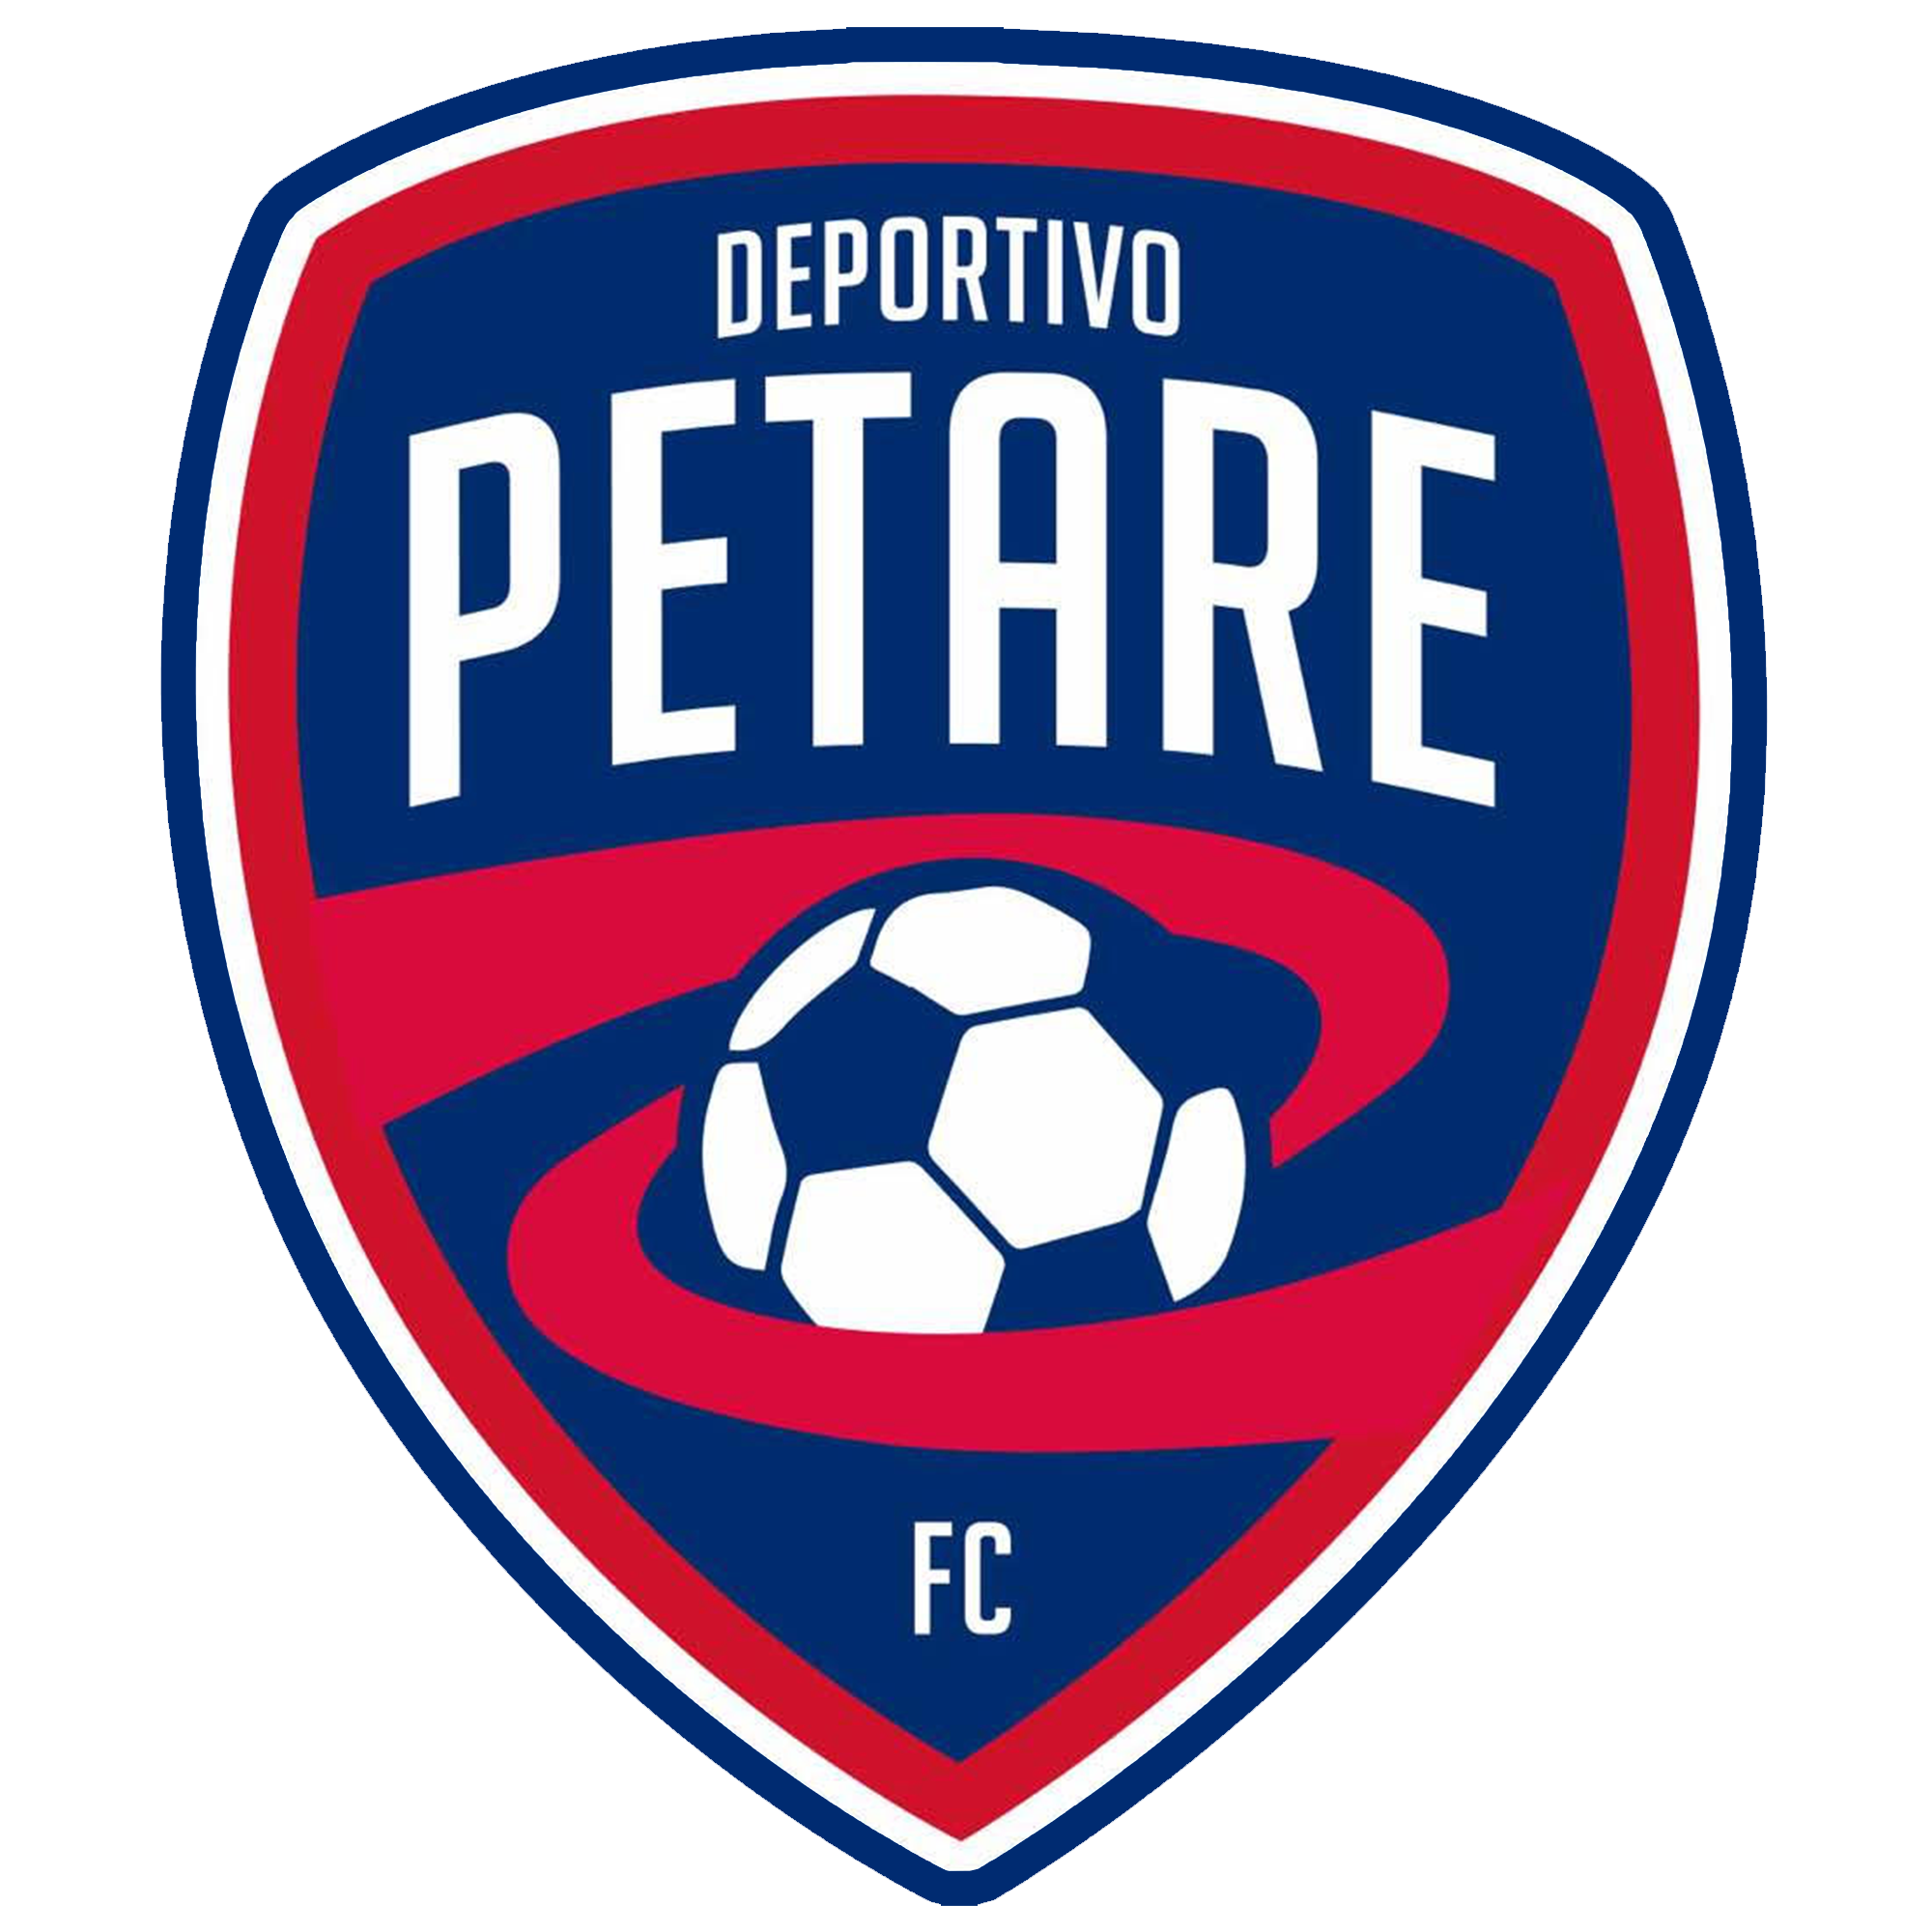 Deportivo Petare 